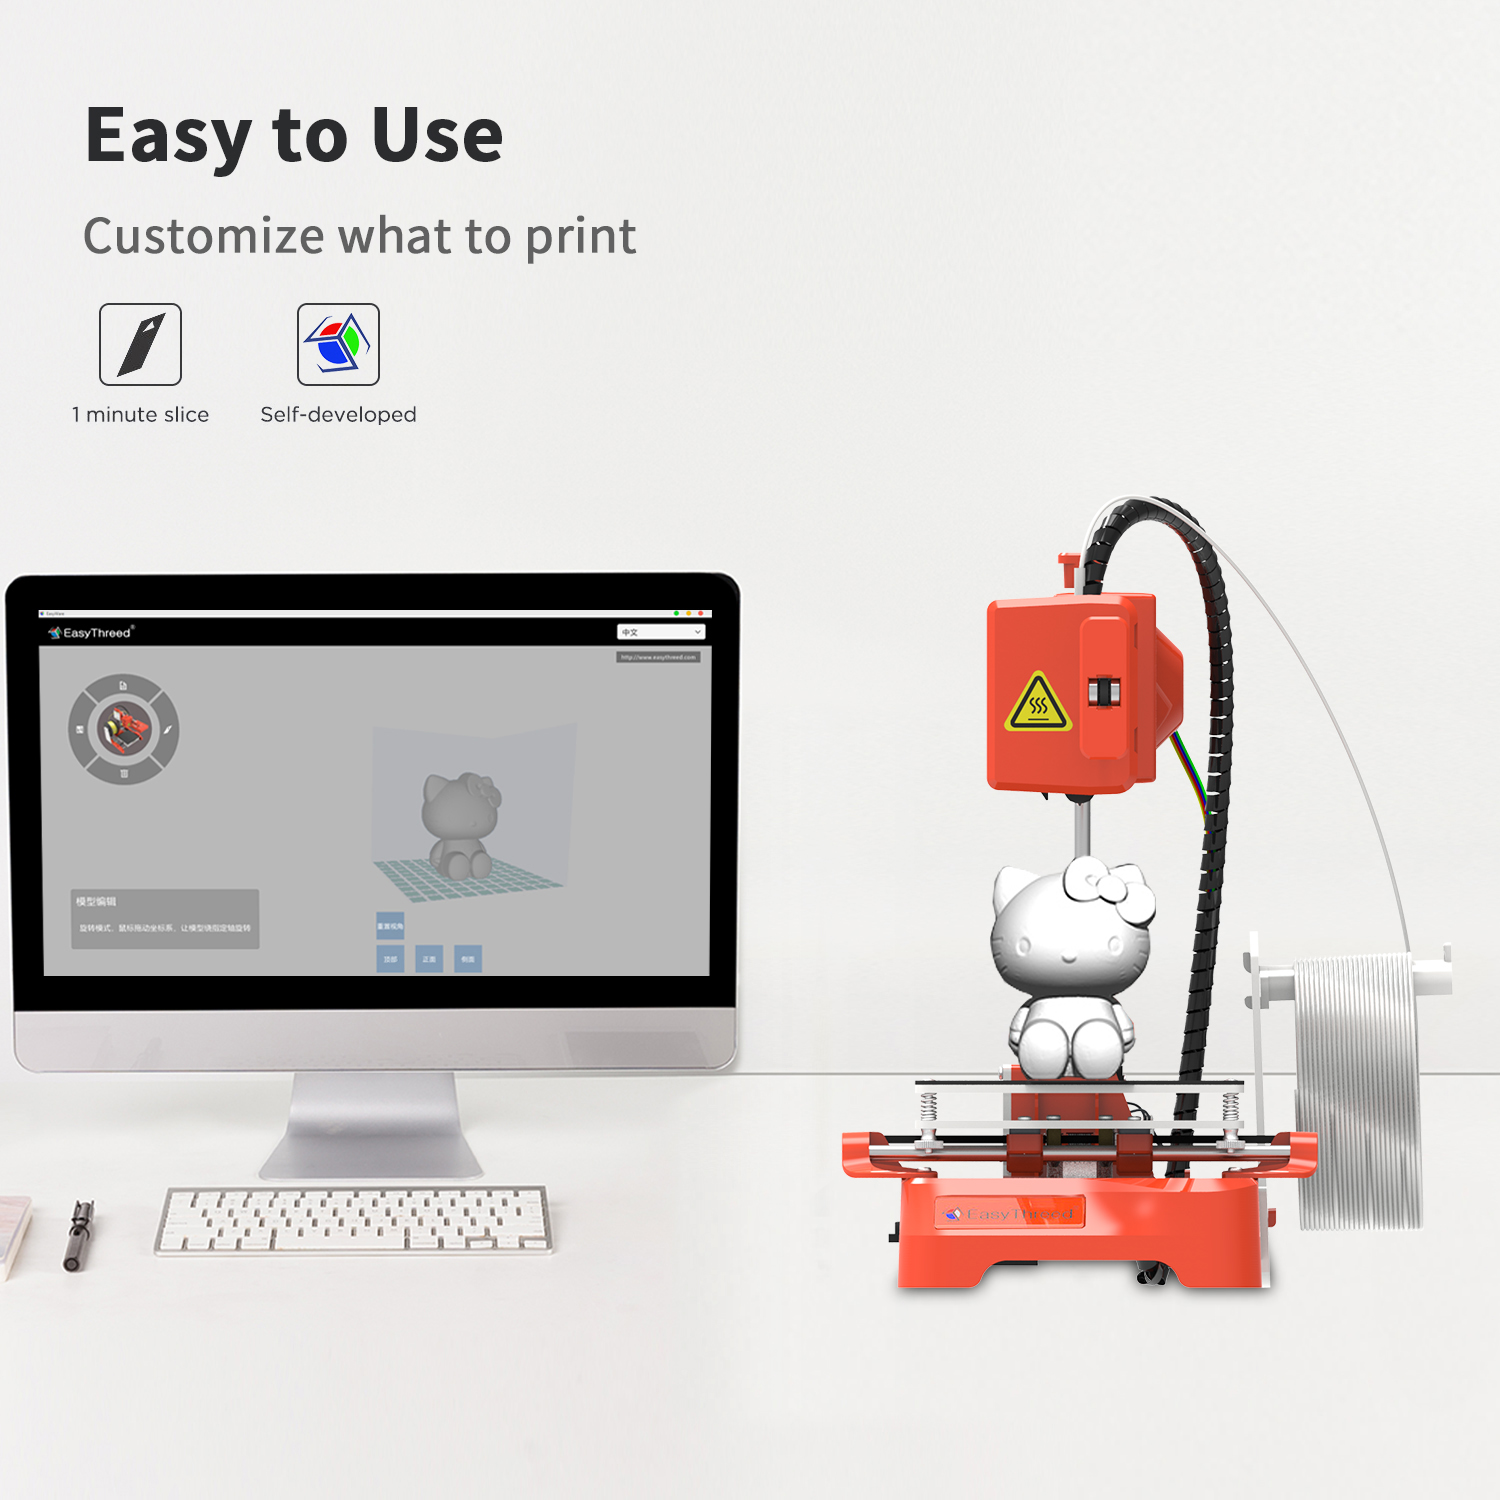 Easythreedreg-K7-Desktop-Mini-3D-Printer-100100100mm-Printing-Size-for-Children-Student-Household-Ed-1805354-7